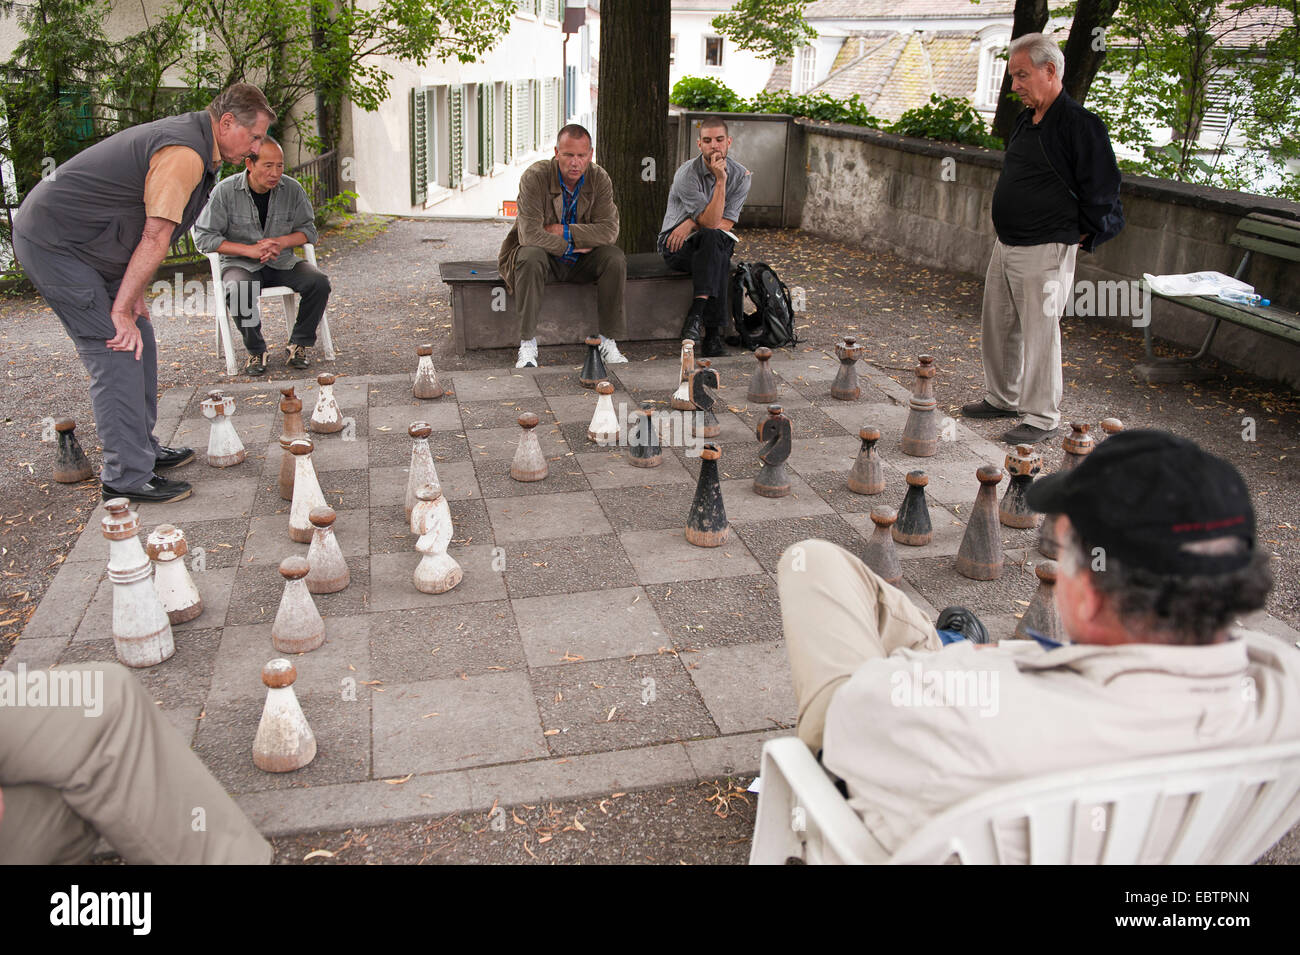 Männer spielen Schach in der alten Stadt, Schweiz, Zürich Stockfotografie -  Alamy